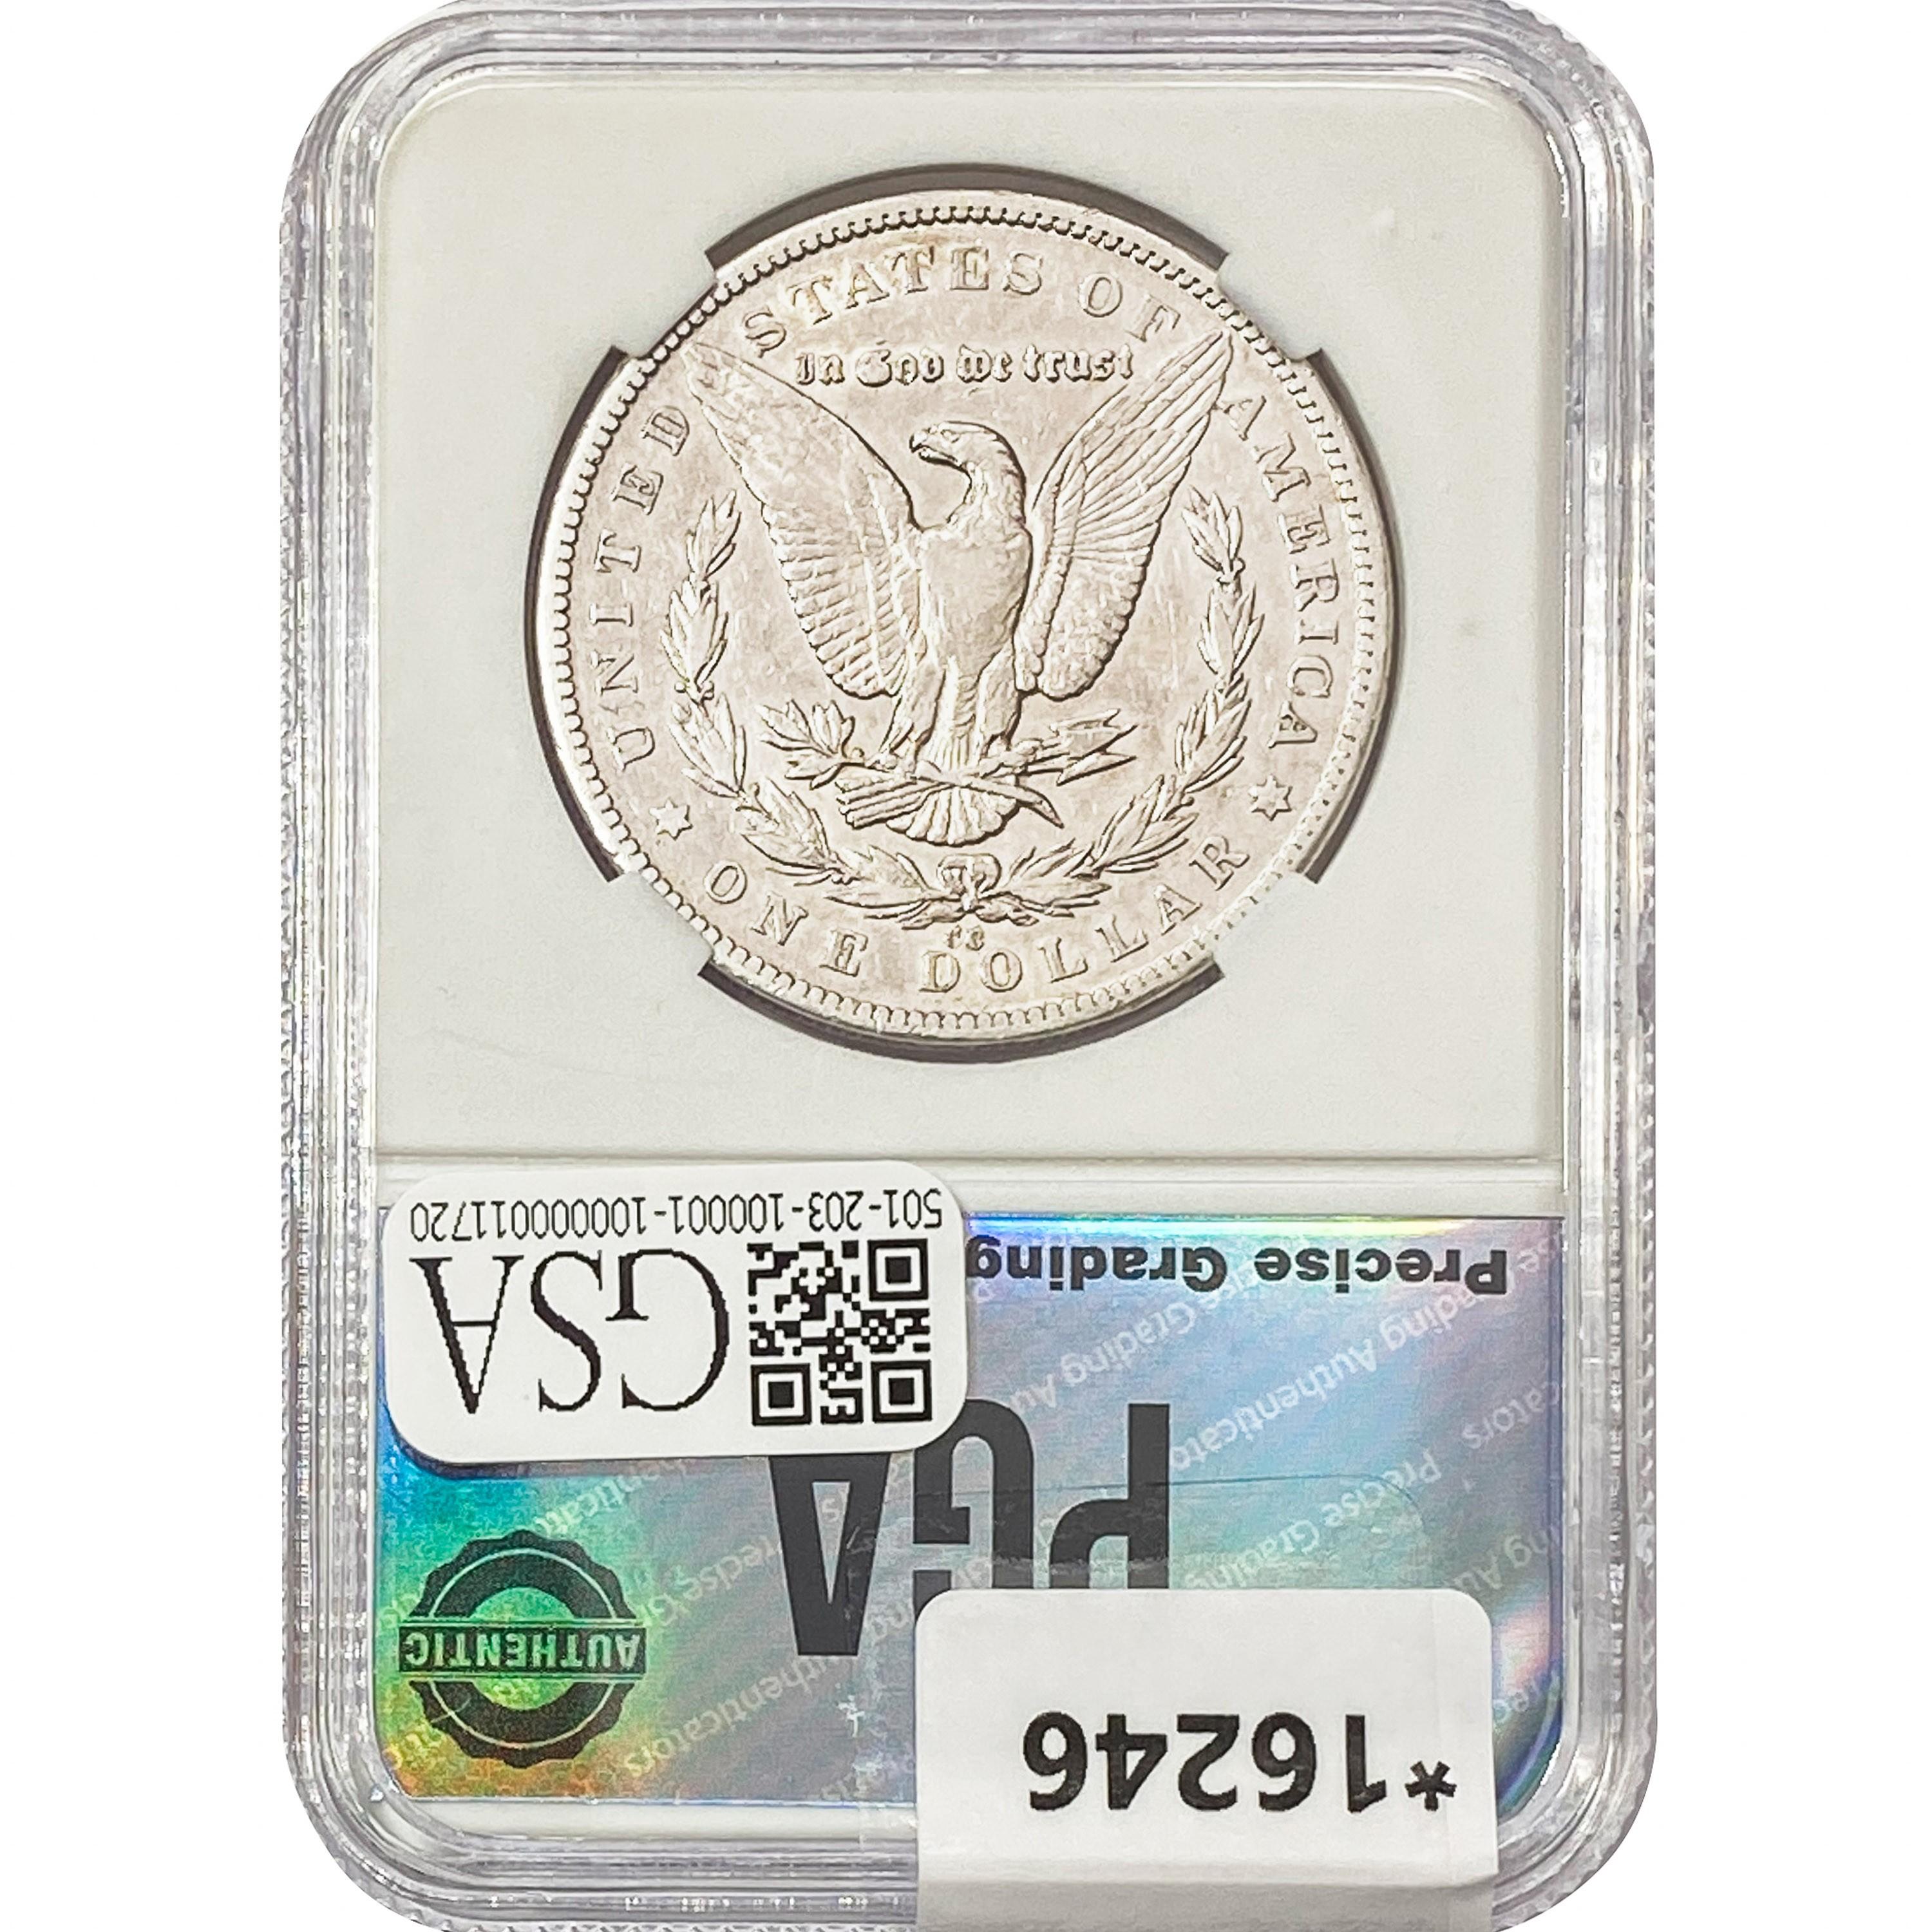 1879-CC Morgan Silver Dollar PGA AU55